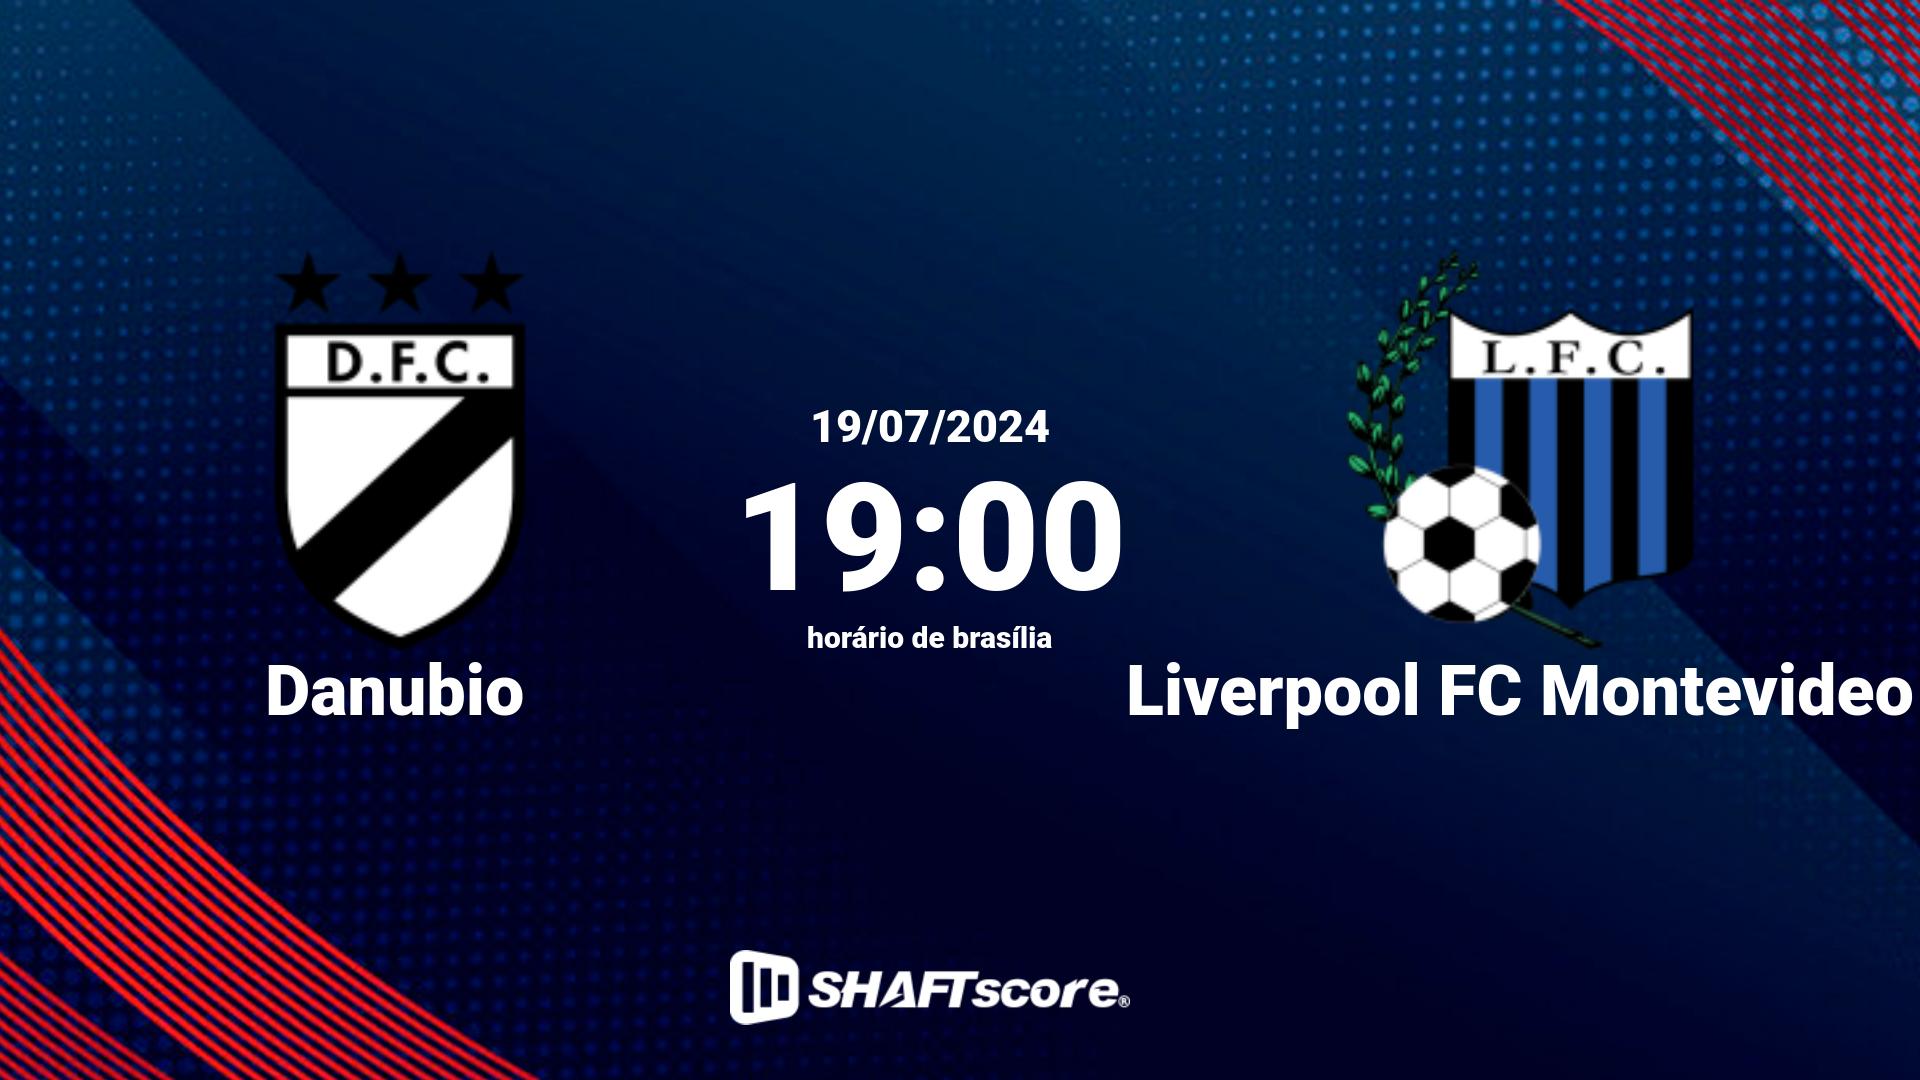 Estatísticas do jogo Danubio vs Liverpool FC Montevideo 19.07 19:00